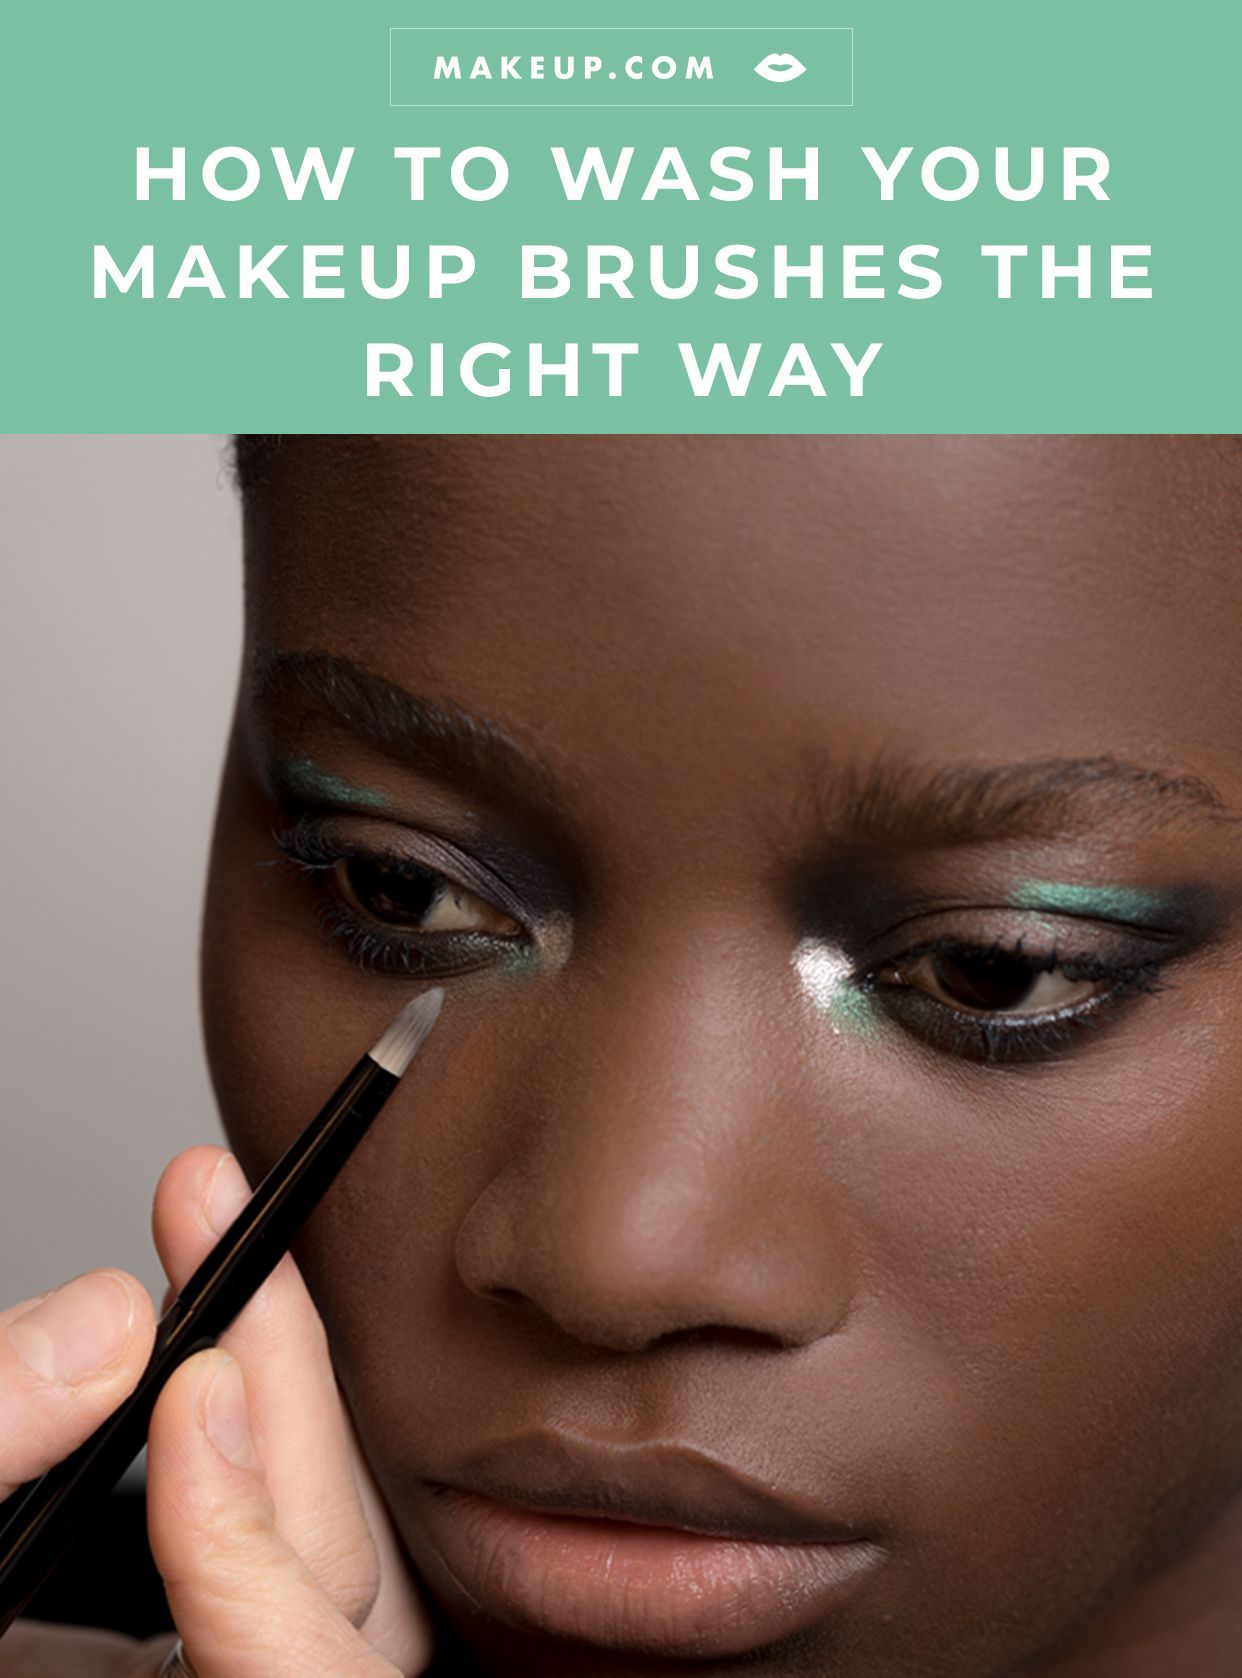 19 diy Makeup kit ideas